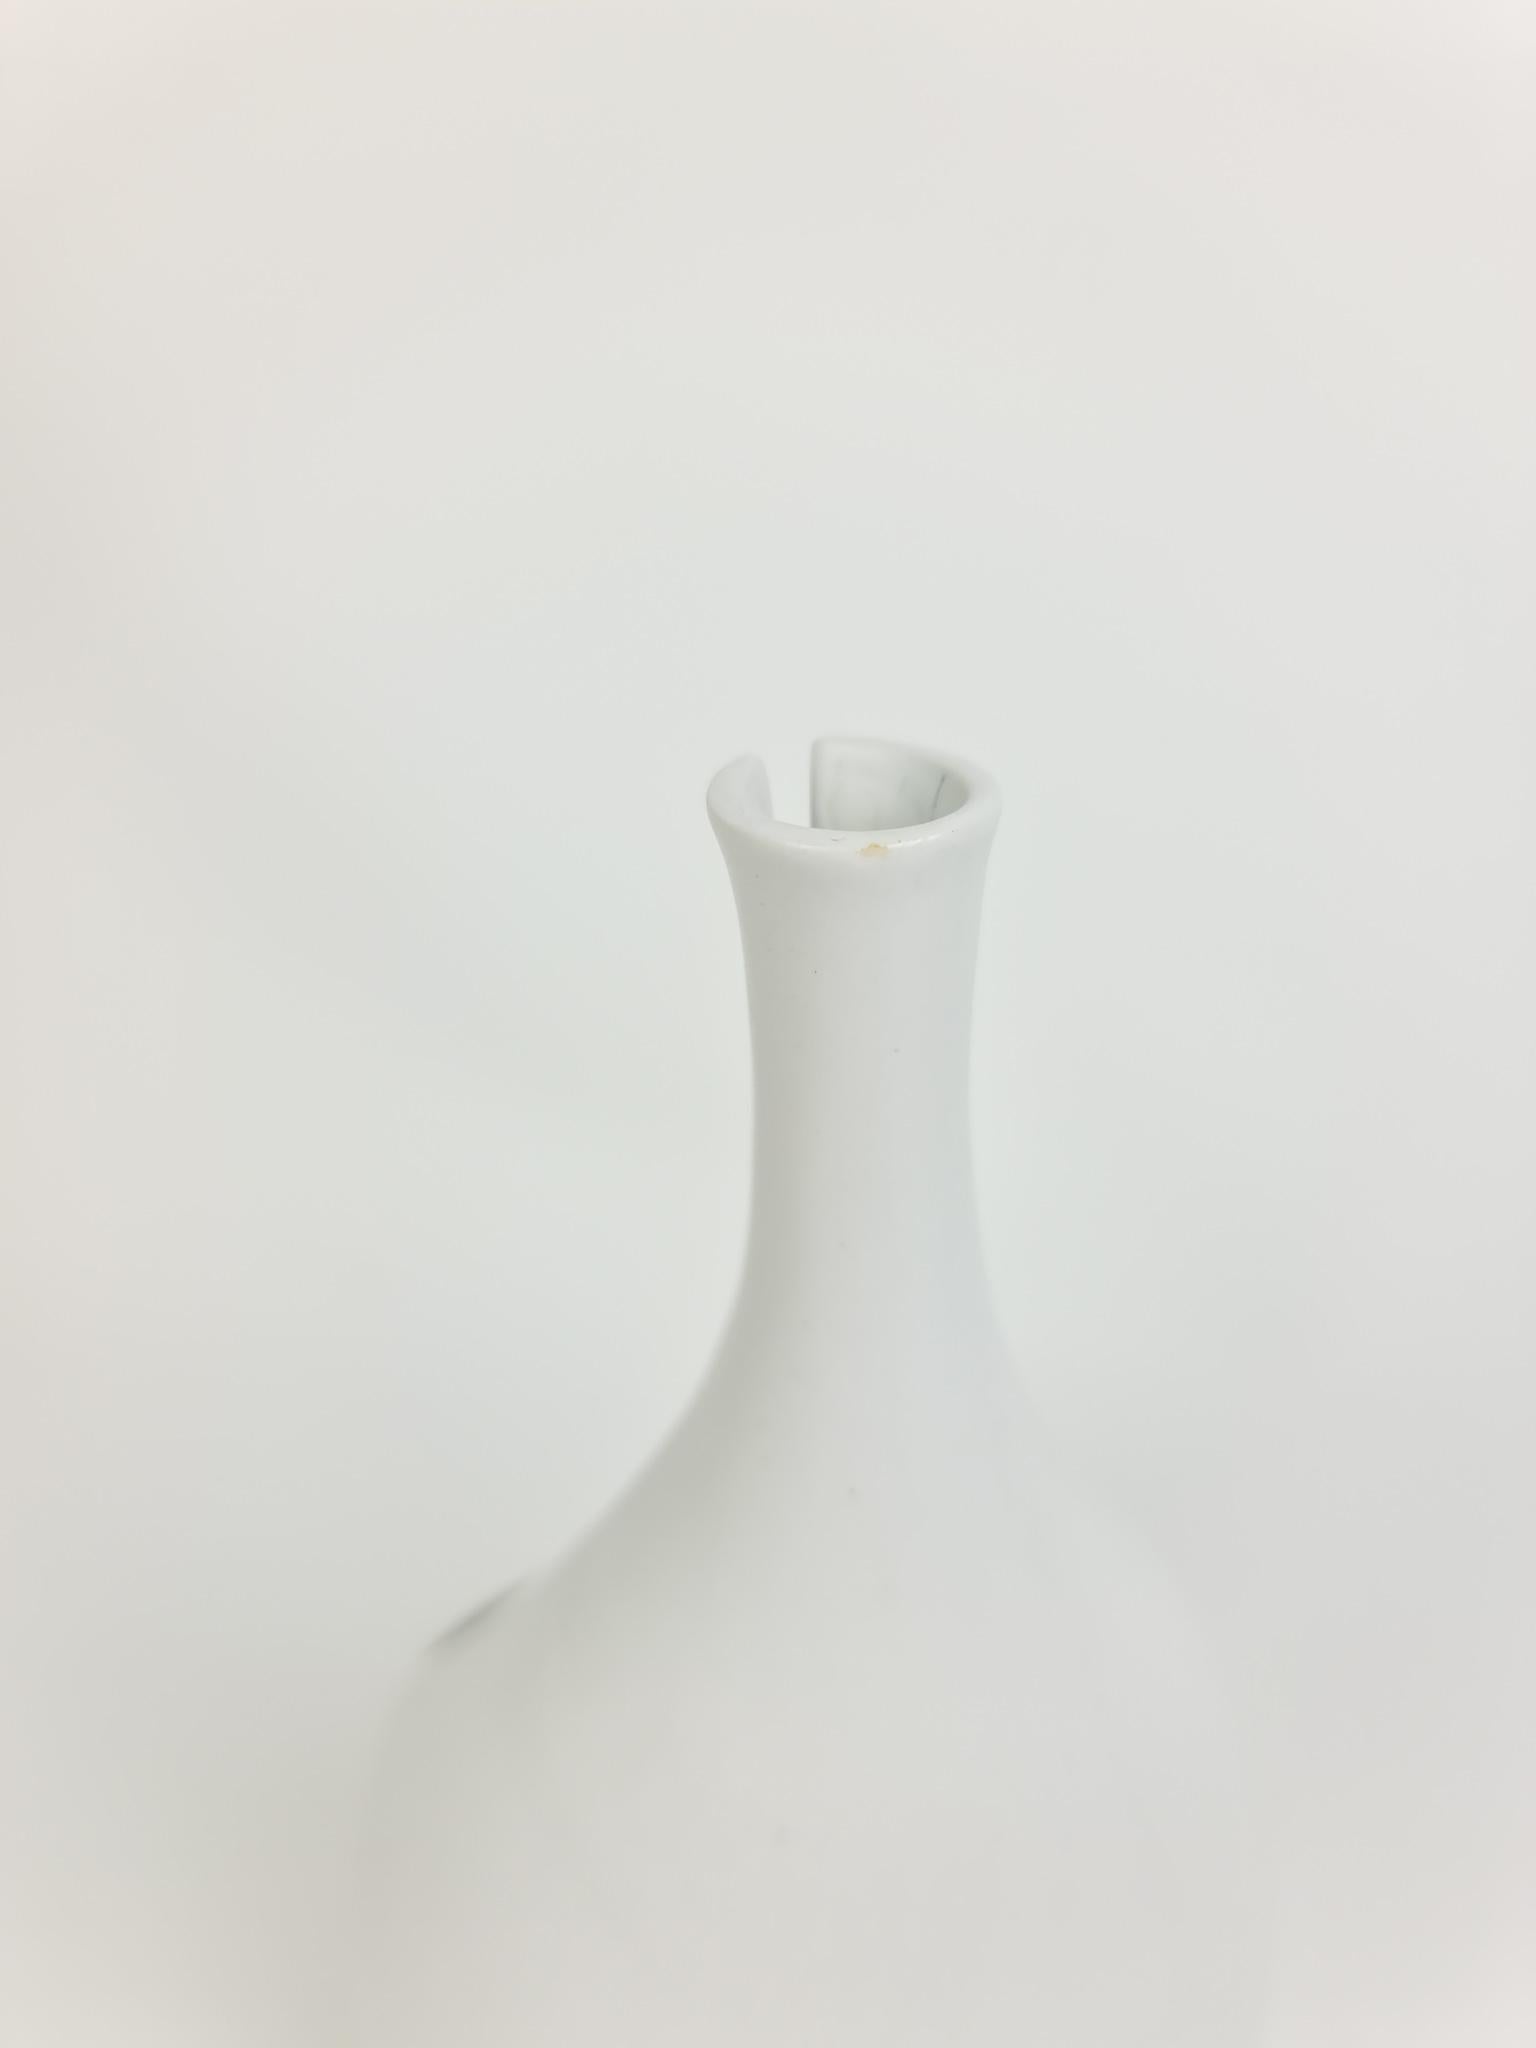 Mid-20th Century Midcentury Ceramic Vase 